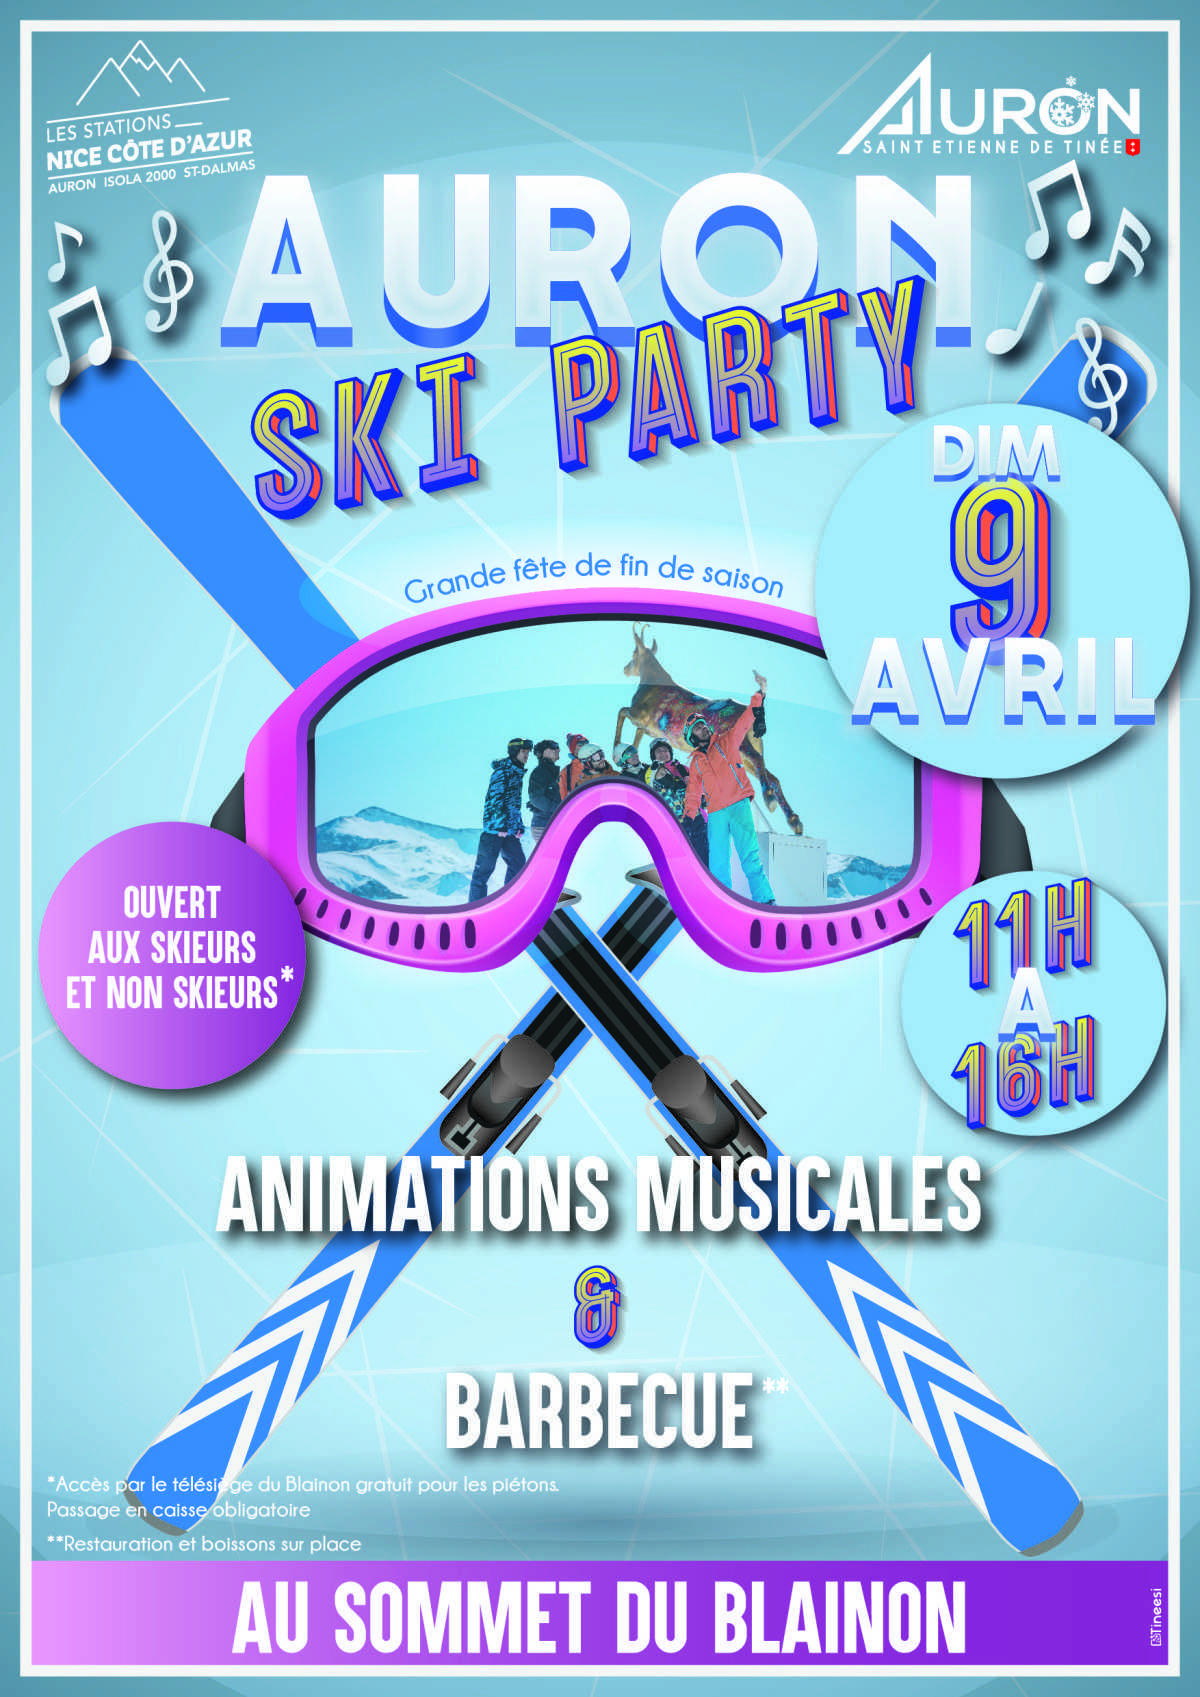 Auron Ski Party 9 Avril